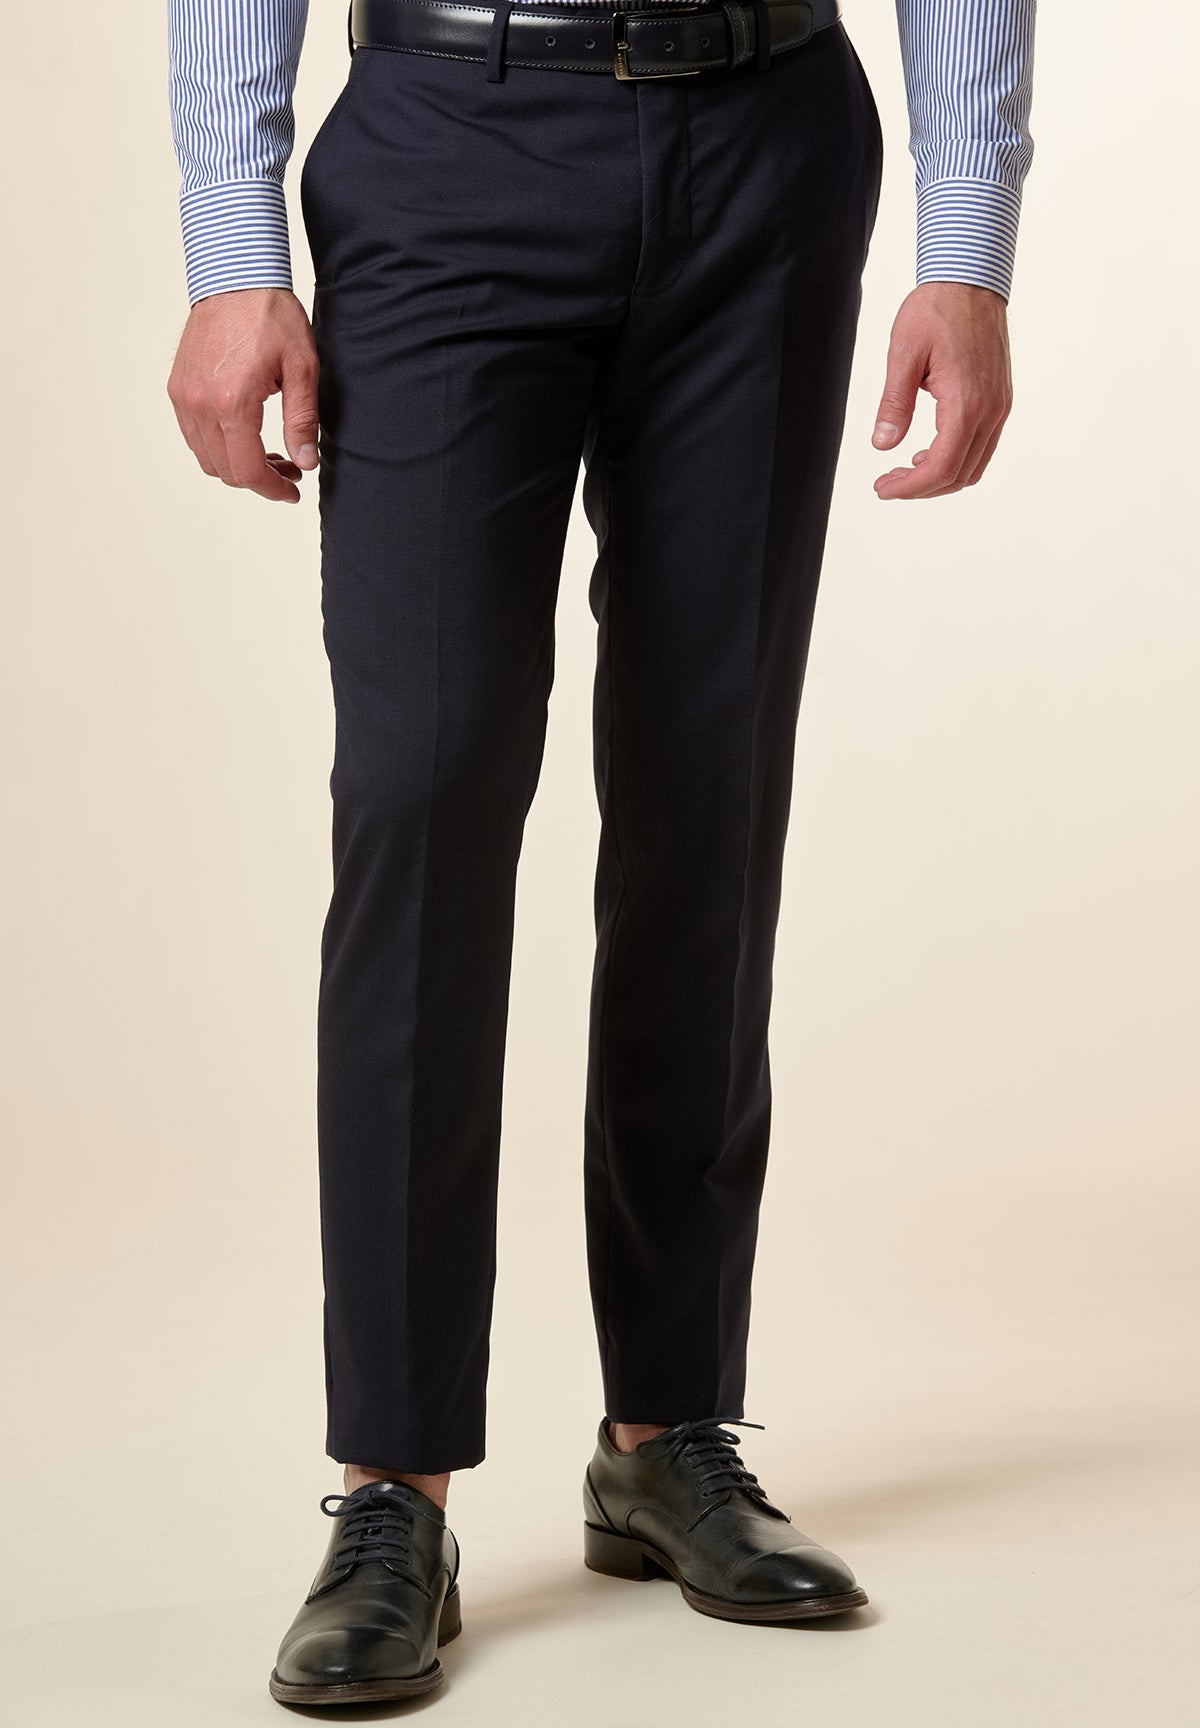 Pantalone blu tela lana vergine custom fit